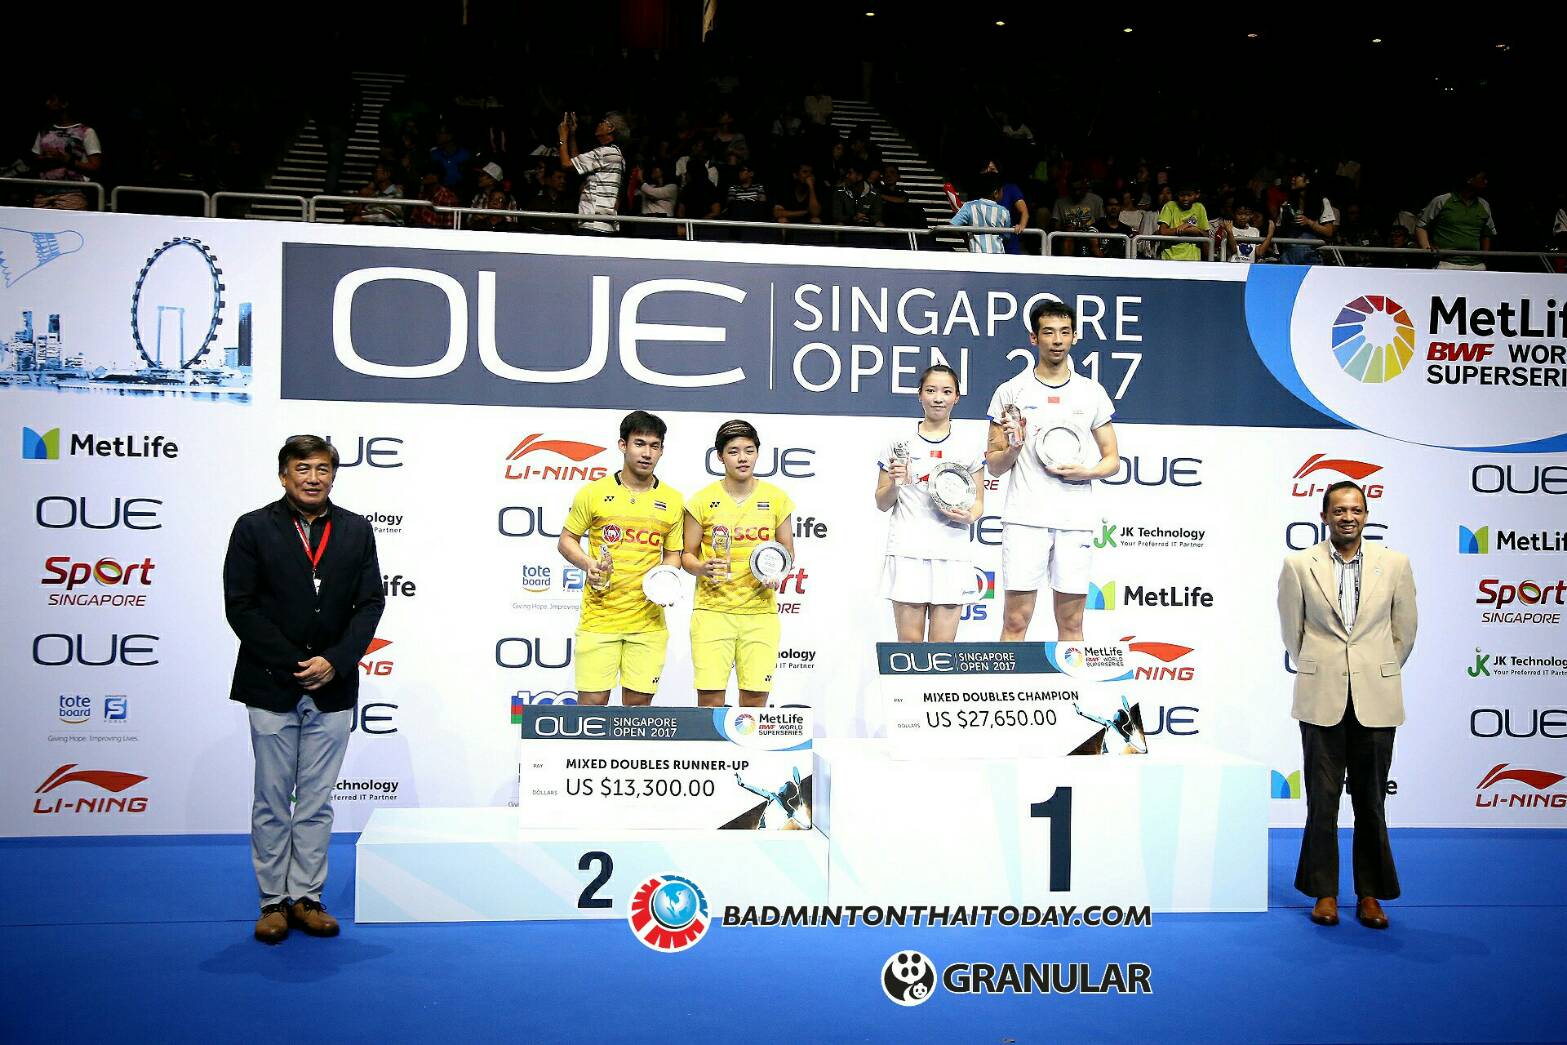 บาส-ปอป้อ ต้านกำแพงเมืองจีนไม่ไหว พ่ายไปแบบสุดมันส์ 1:2 เกมส์ ได้ตำแหน่งรองแชมป์ OUE Singapore Open 2017